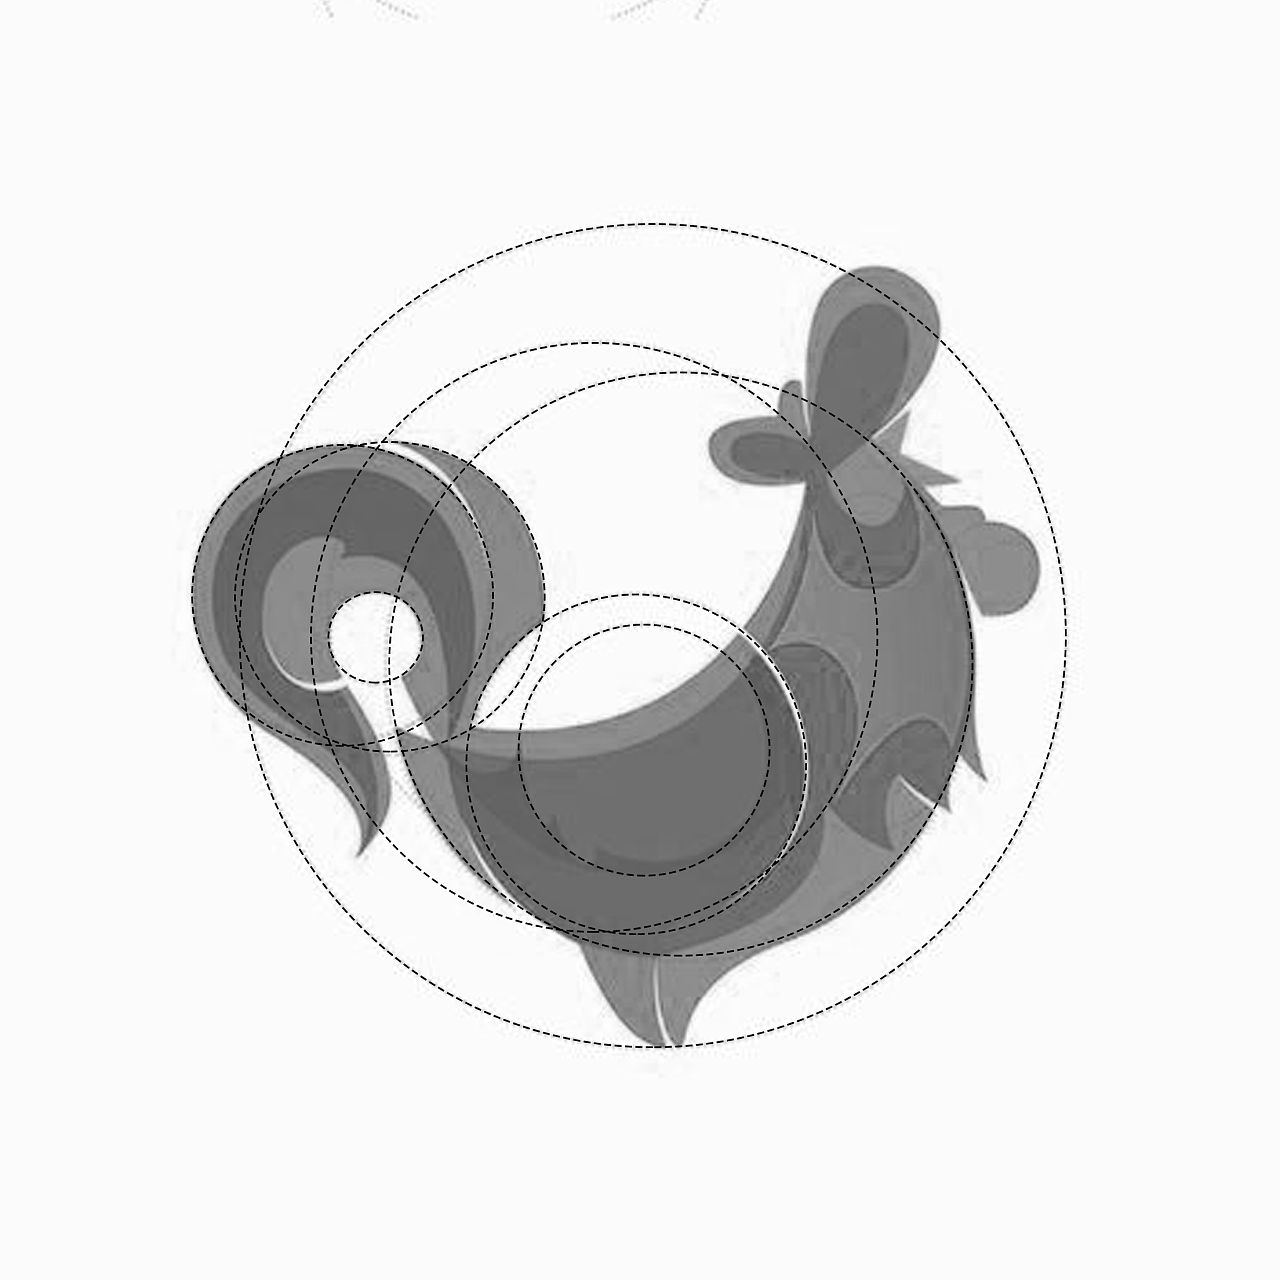 圆形组成的小动物图片-图库-五毛网